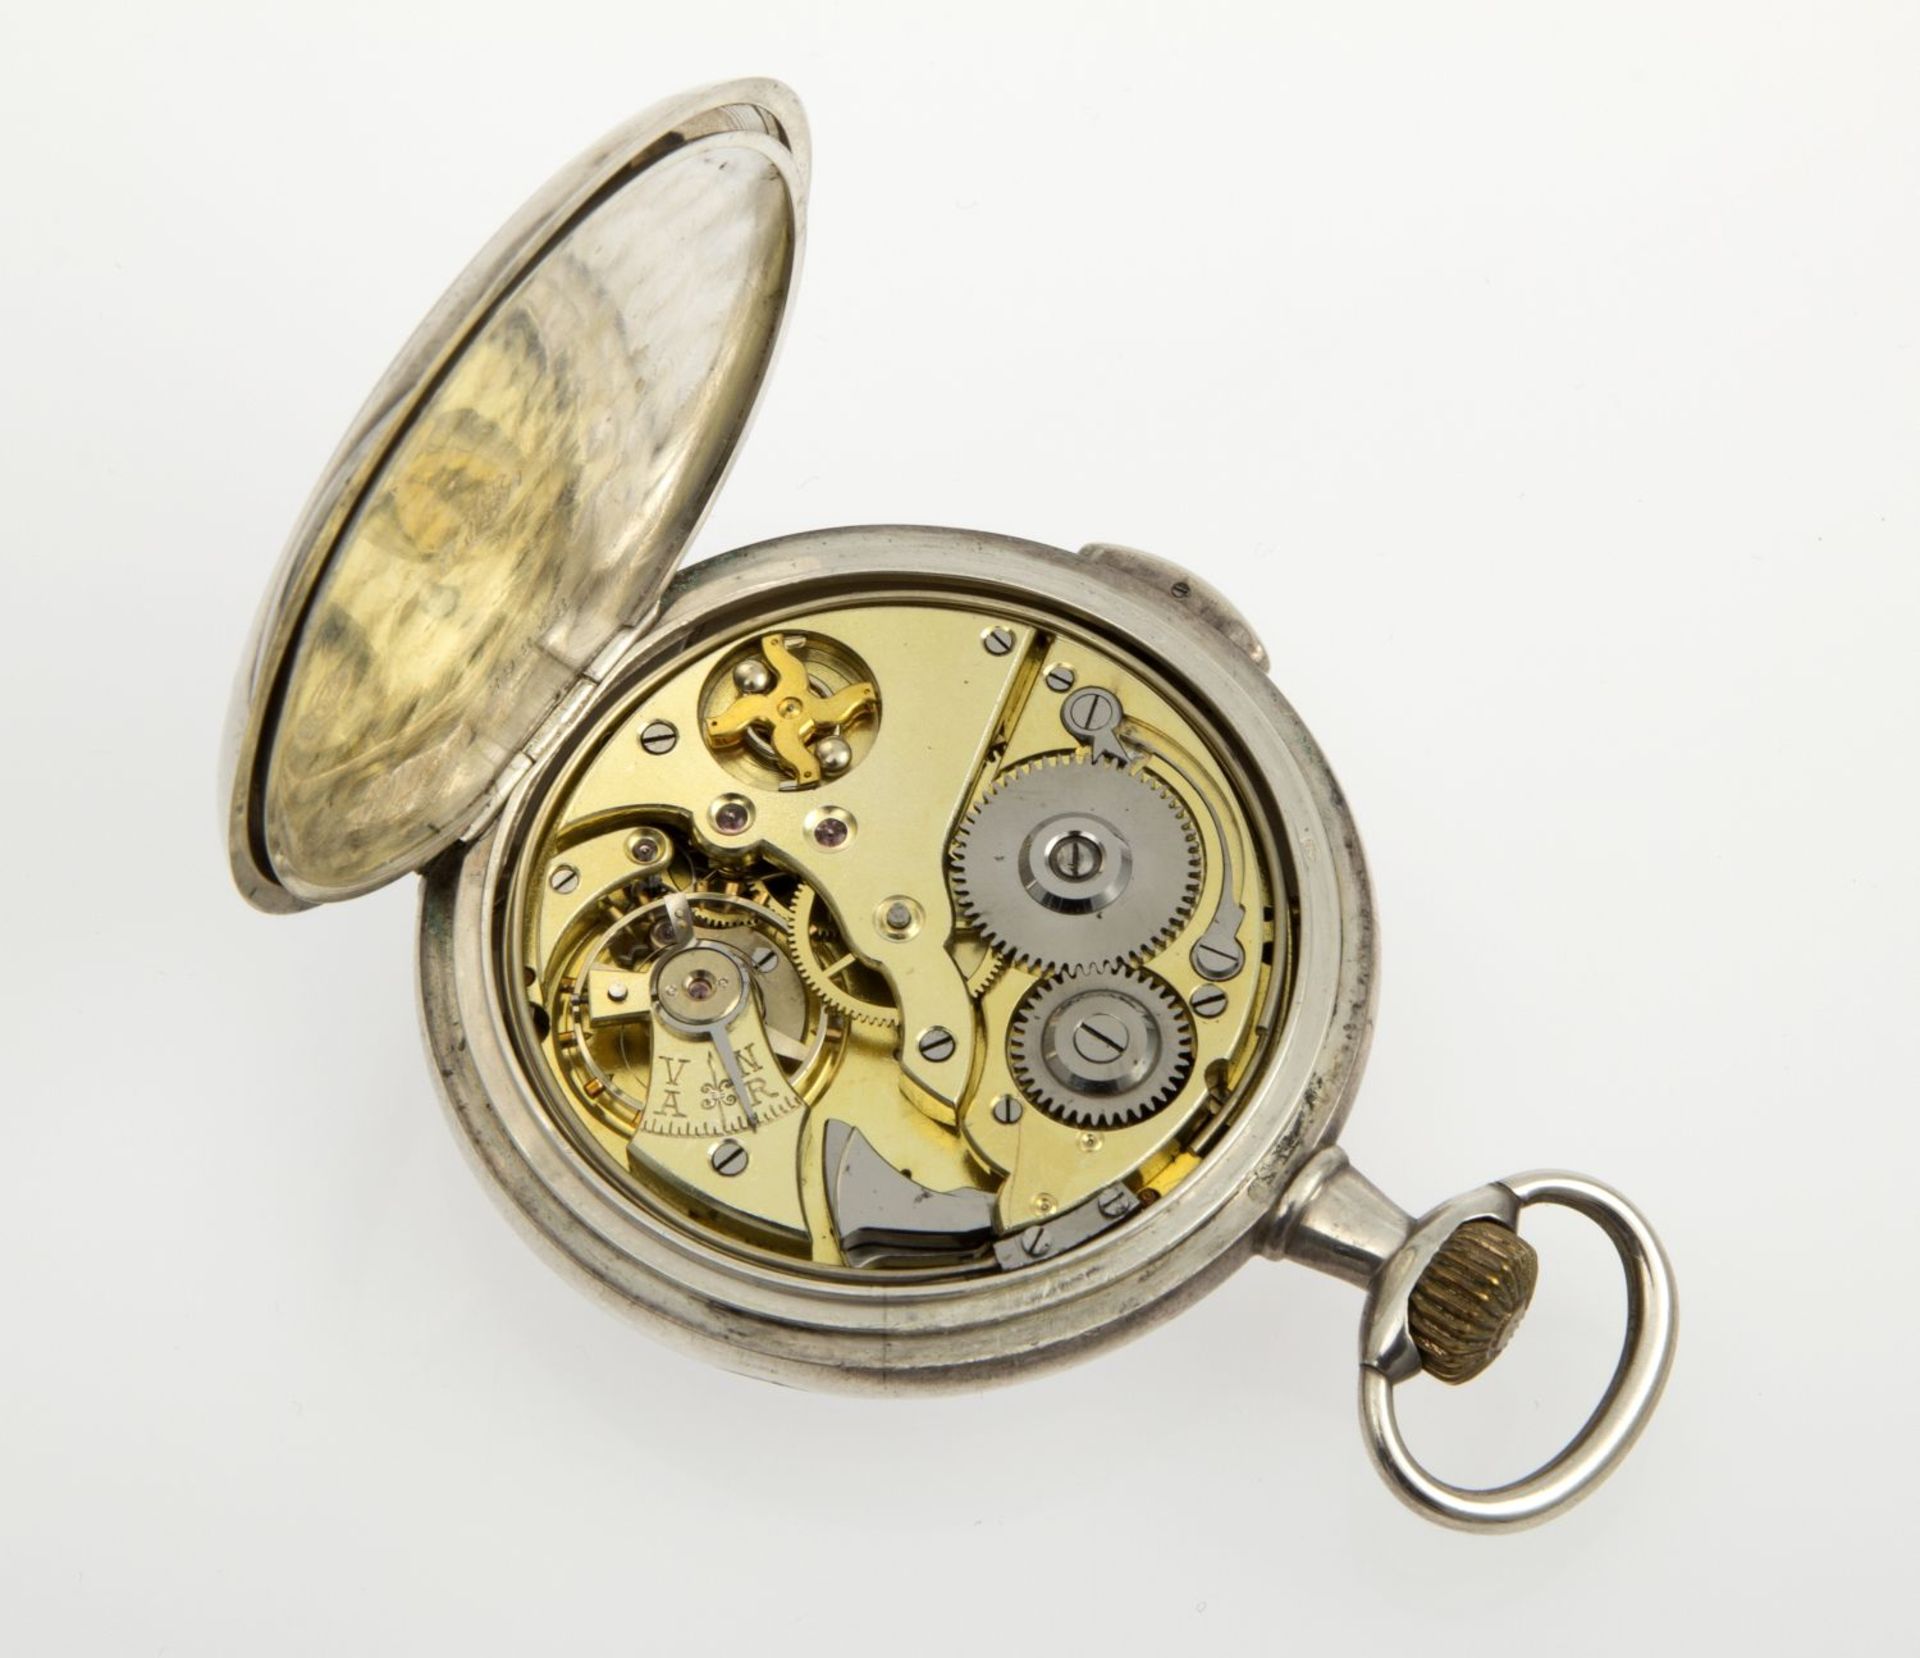 Invicta-Taschenuhr mit ViertelrepetitionGehäuse und Cuvette aus Silber 875. Emailzifferblatt mit - Bild 2 aus 3